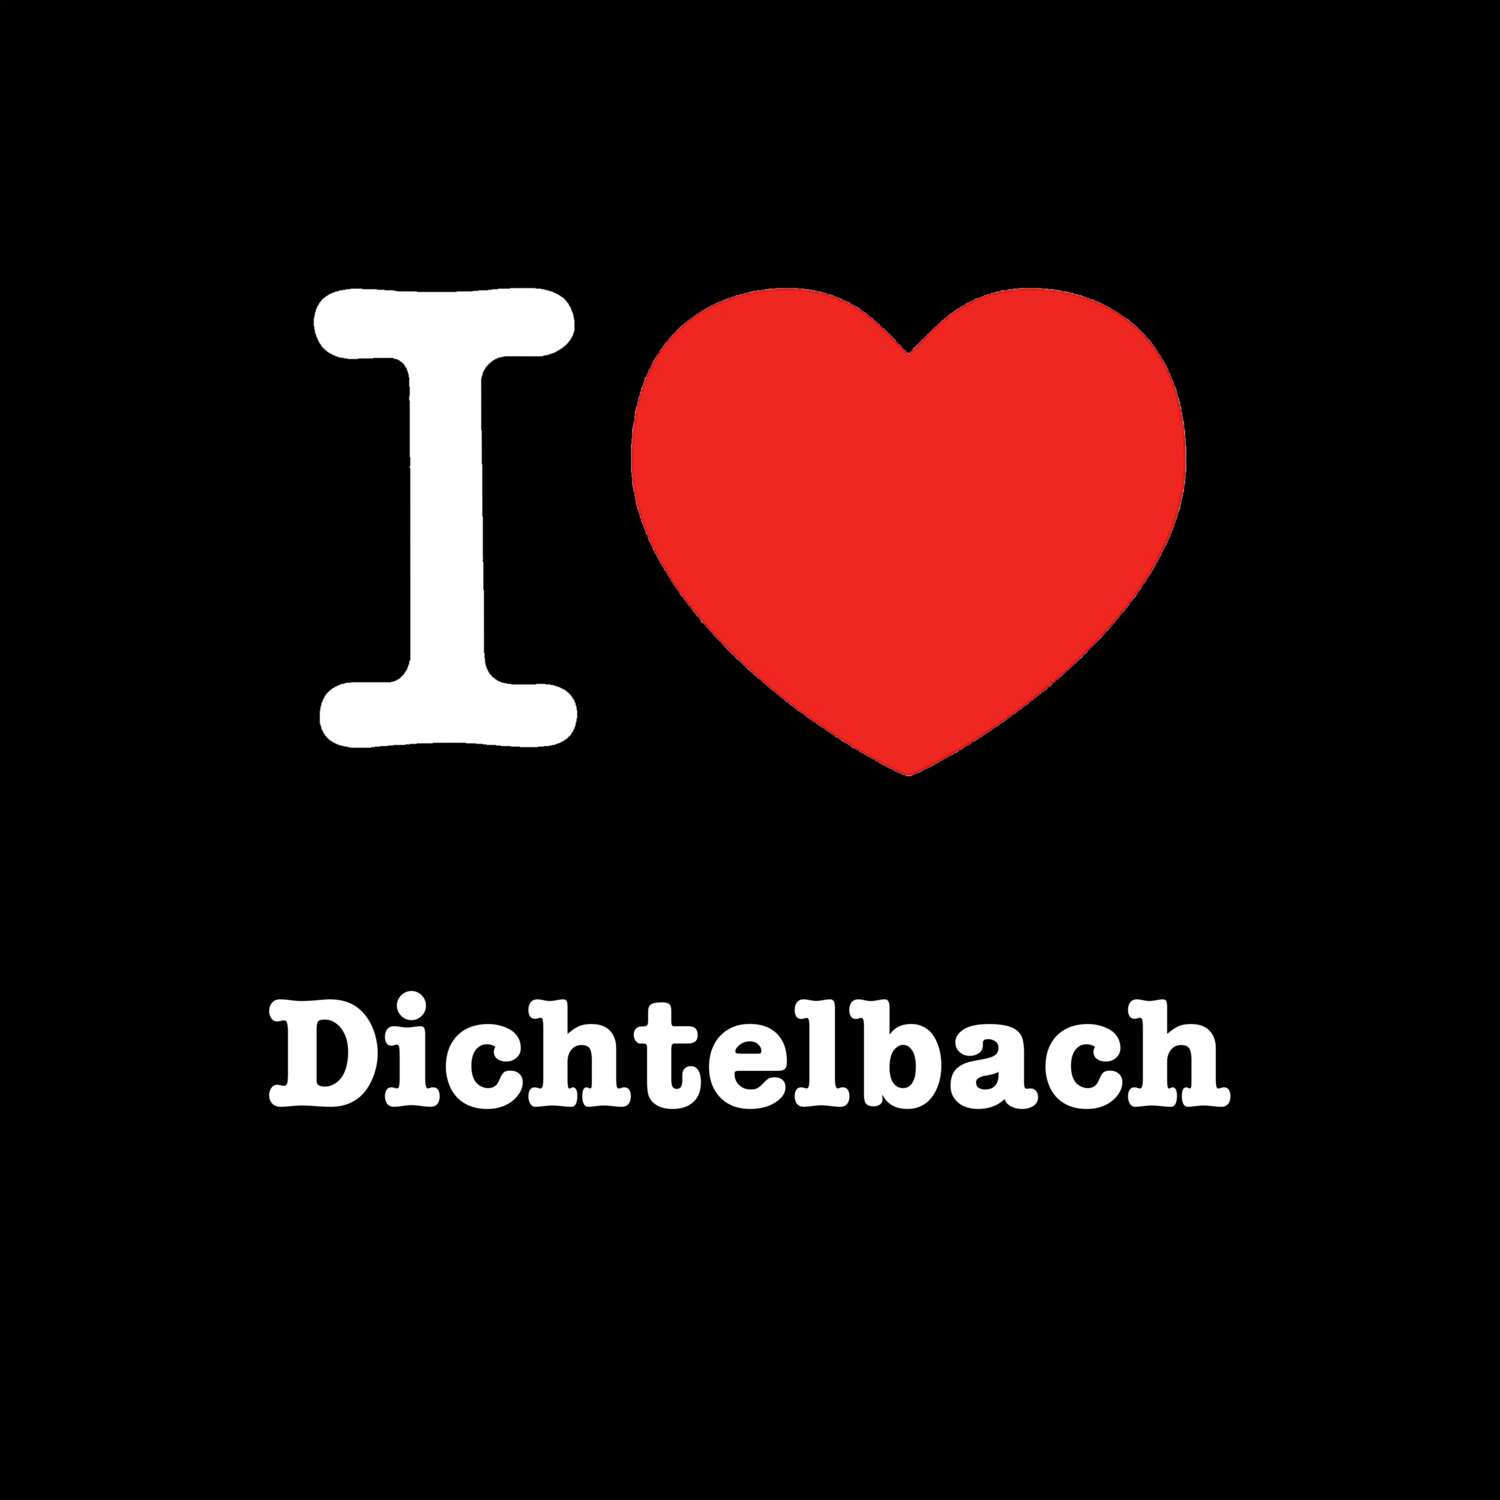 Dichtelbach T-Shirt »I love«